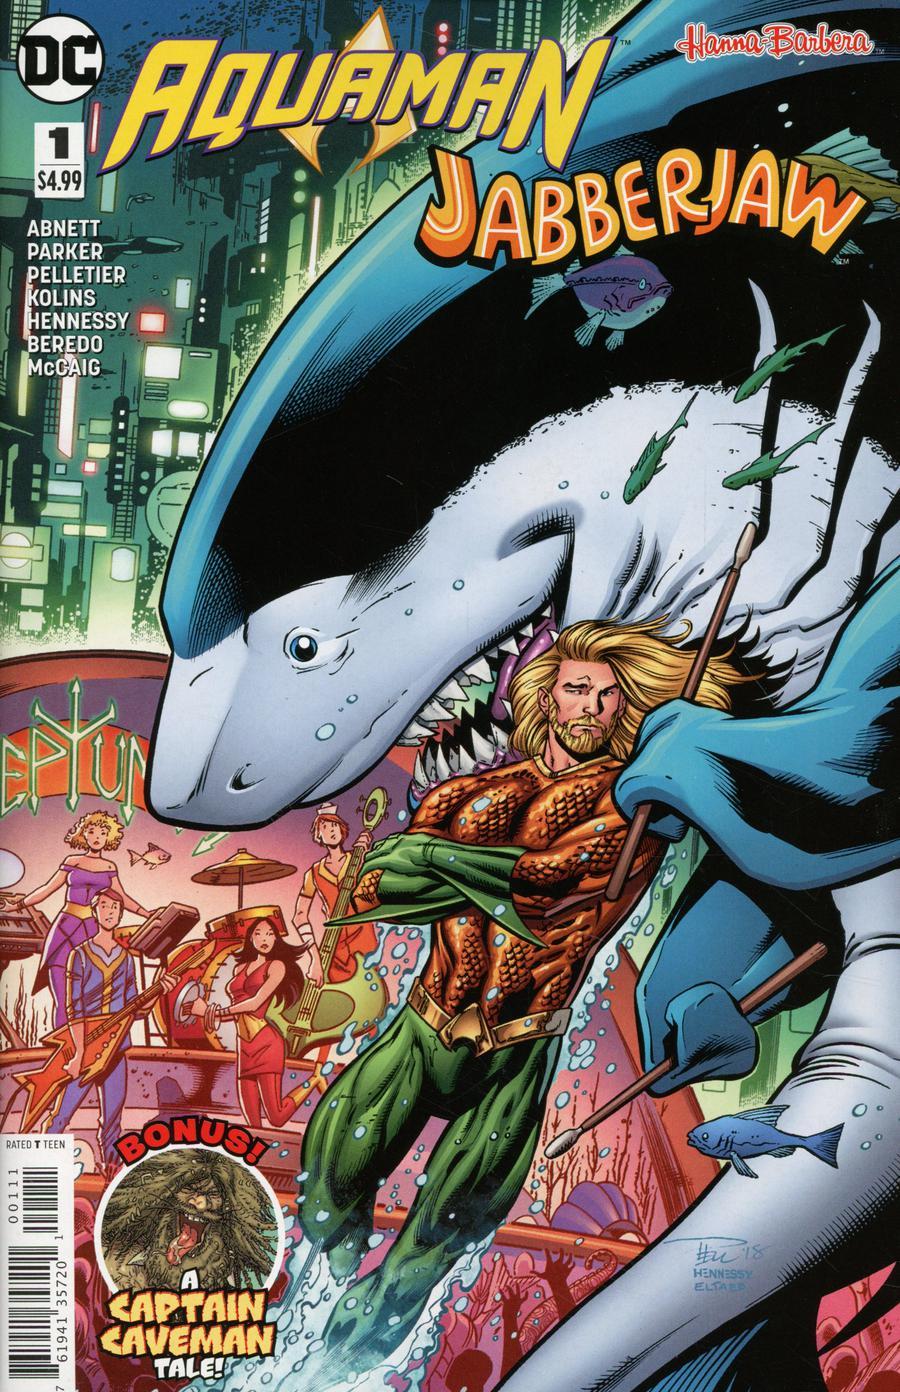 Aquaman Jabberjaw Special Vol. 1 #1